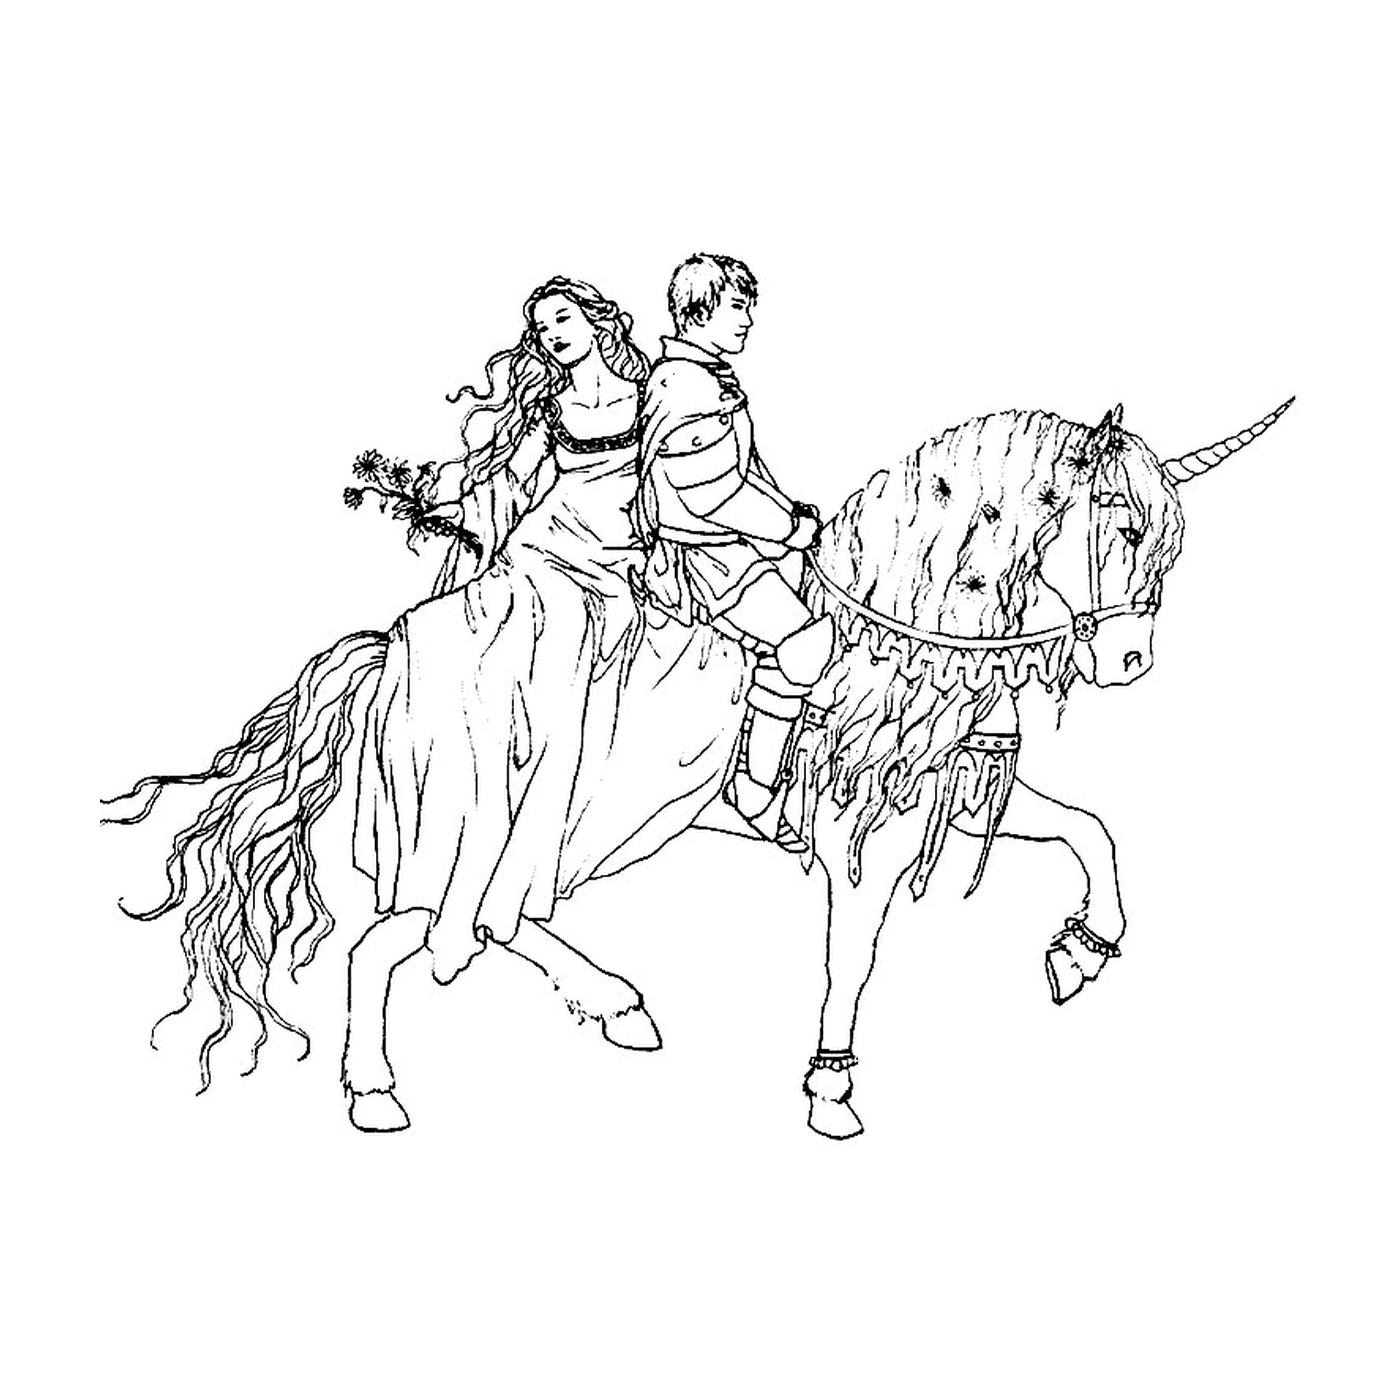  Royal couple riding a horse 